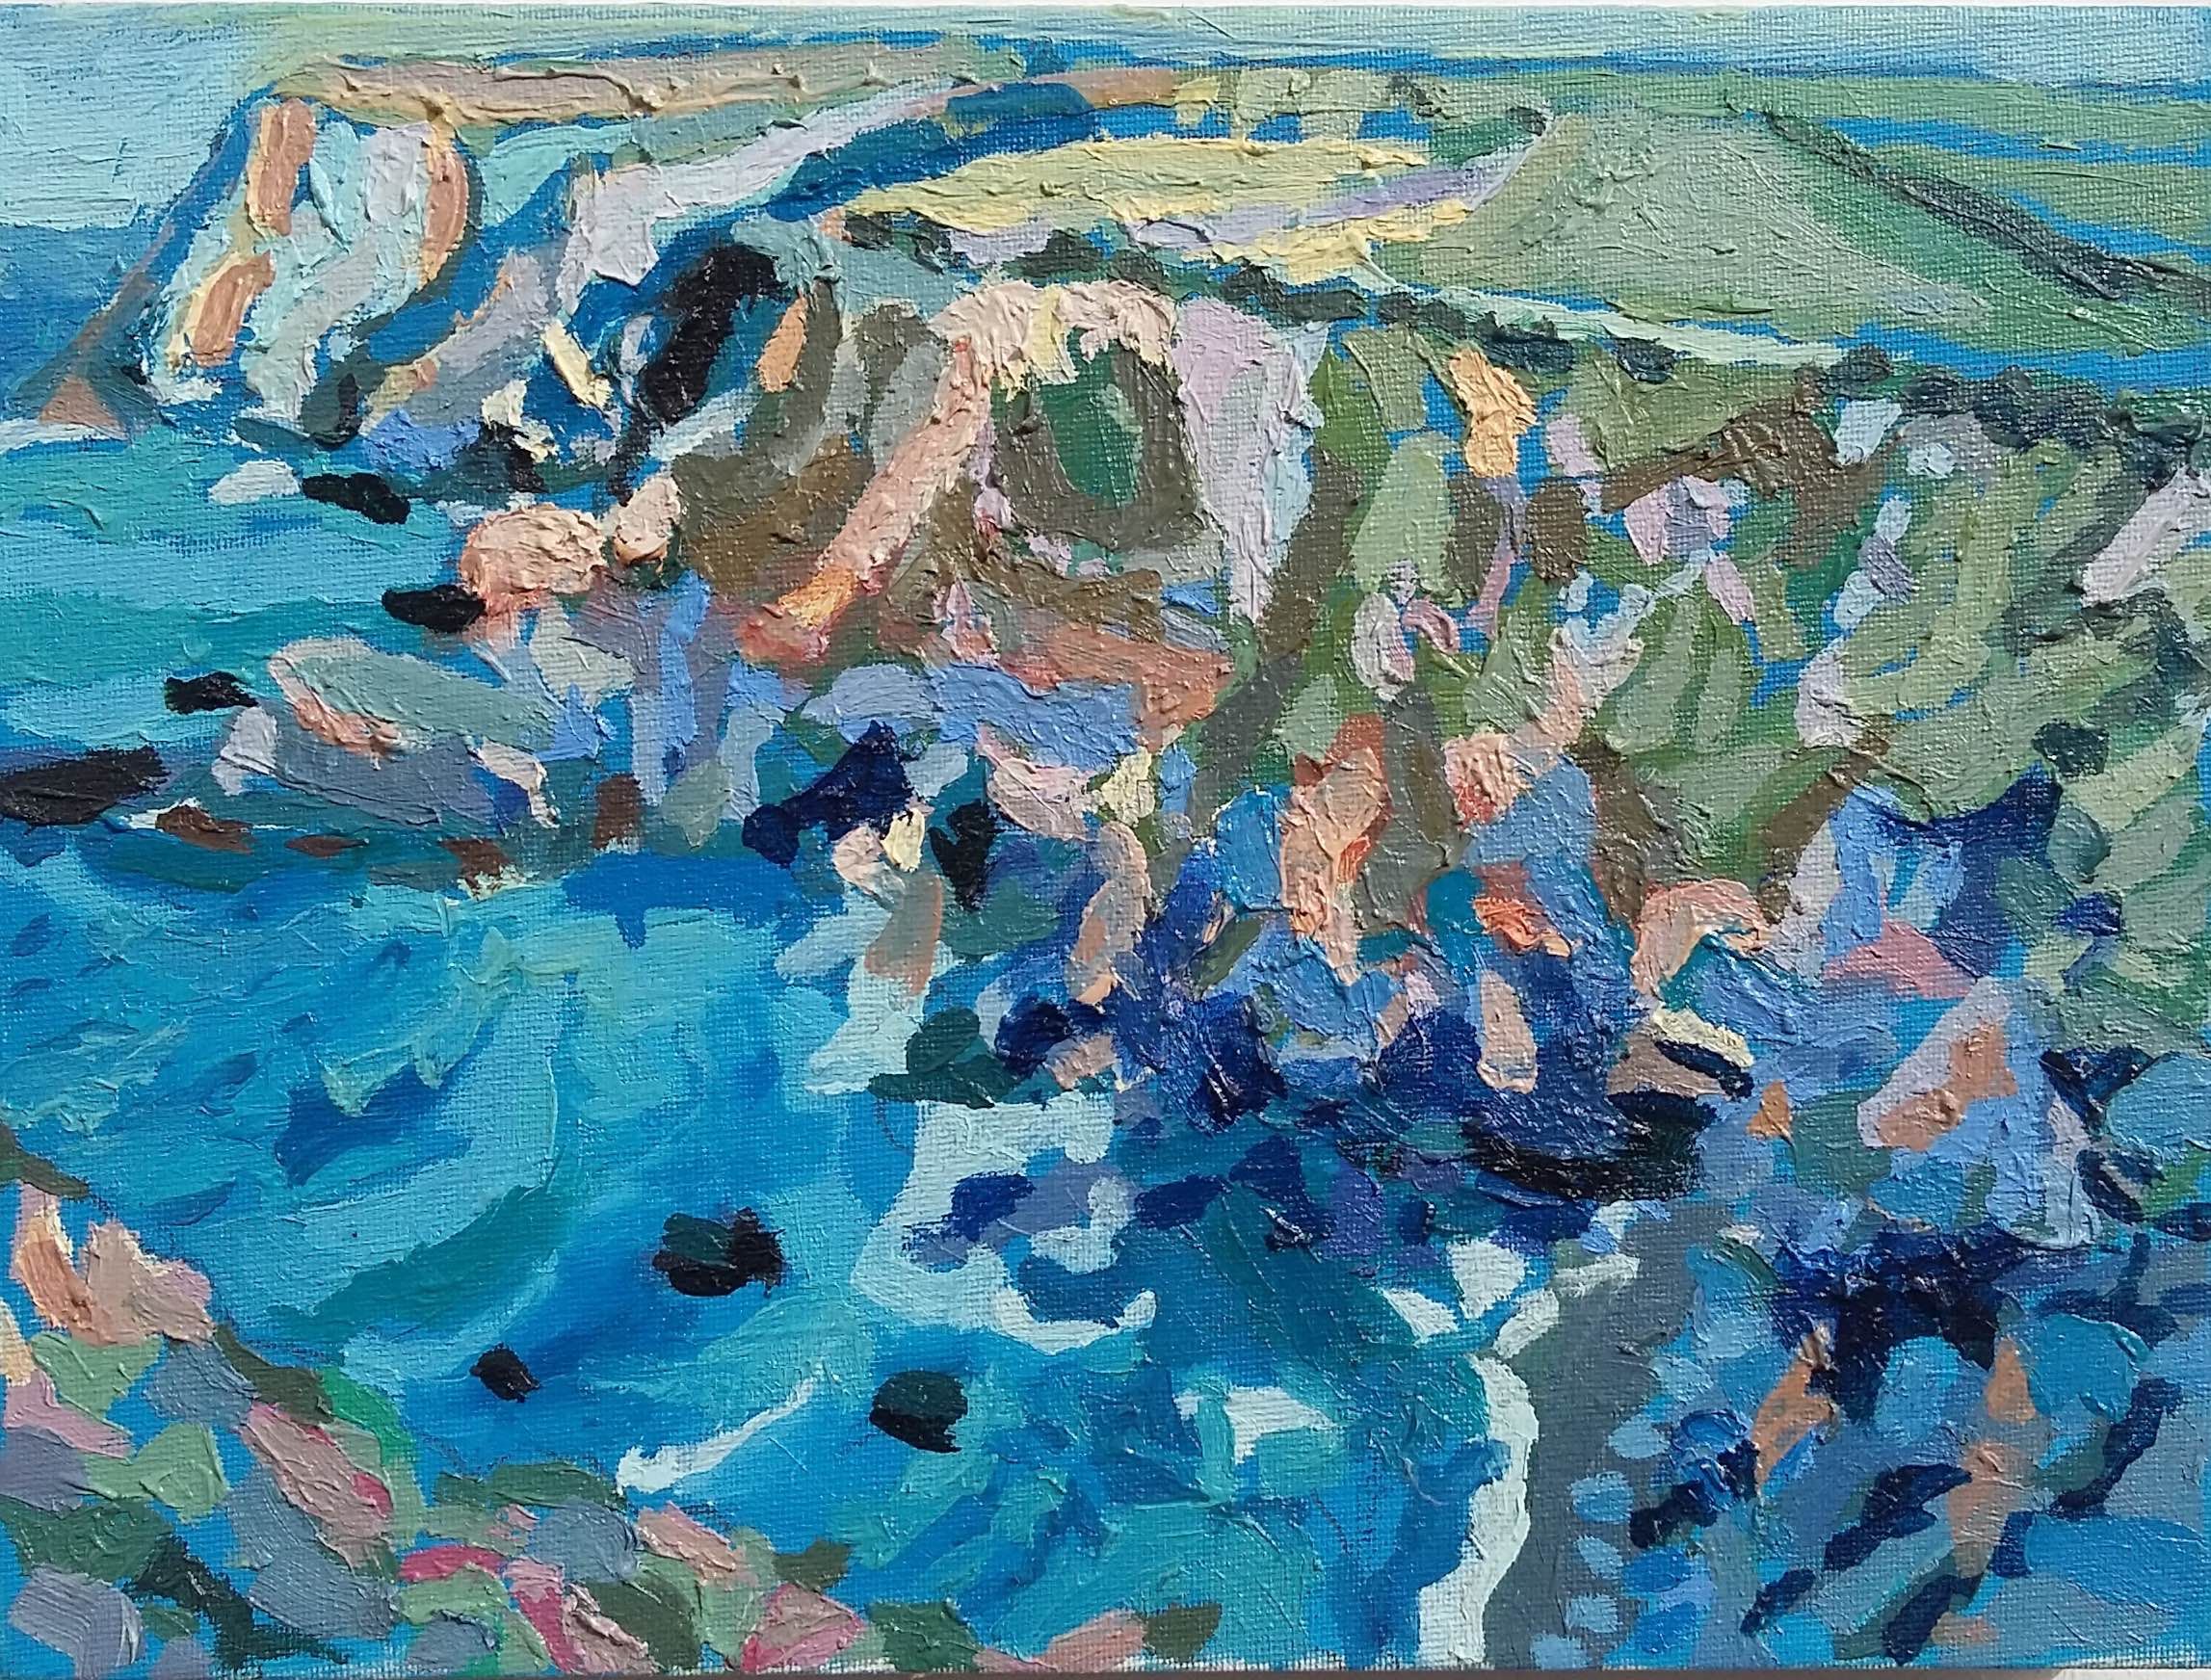 North Cliffs by Diane Hadden